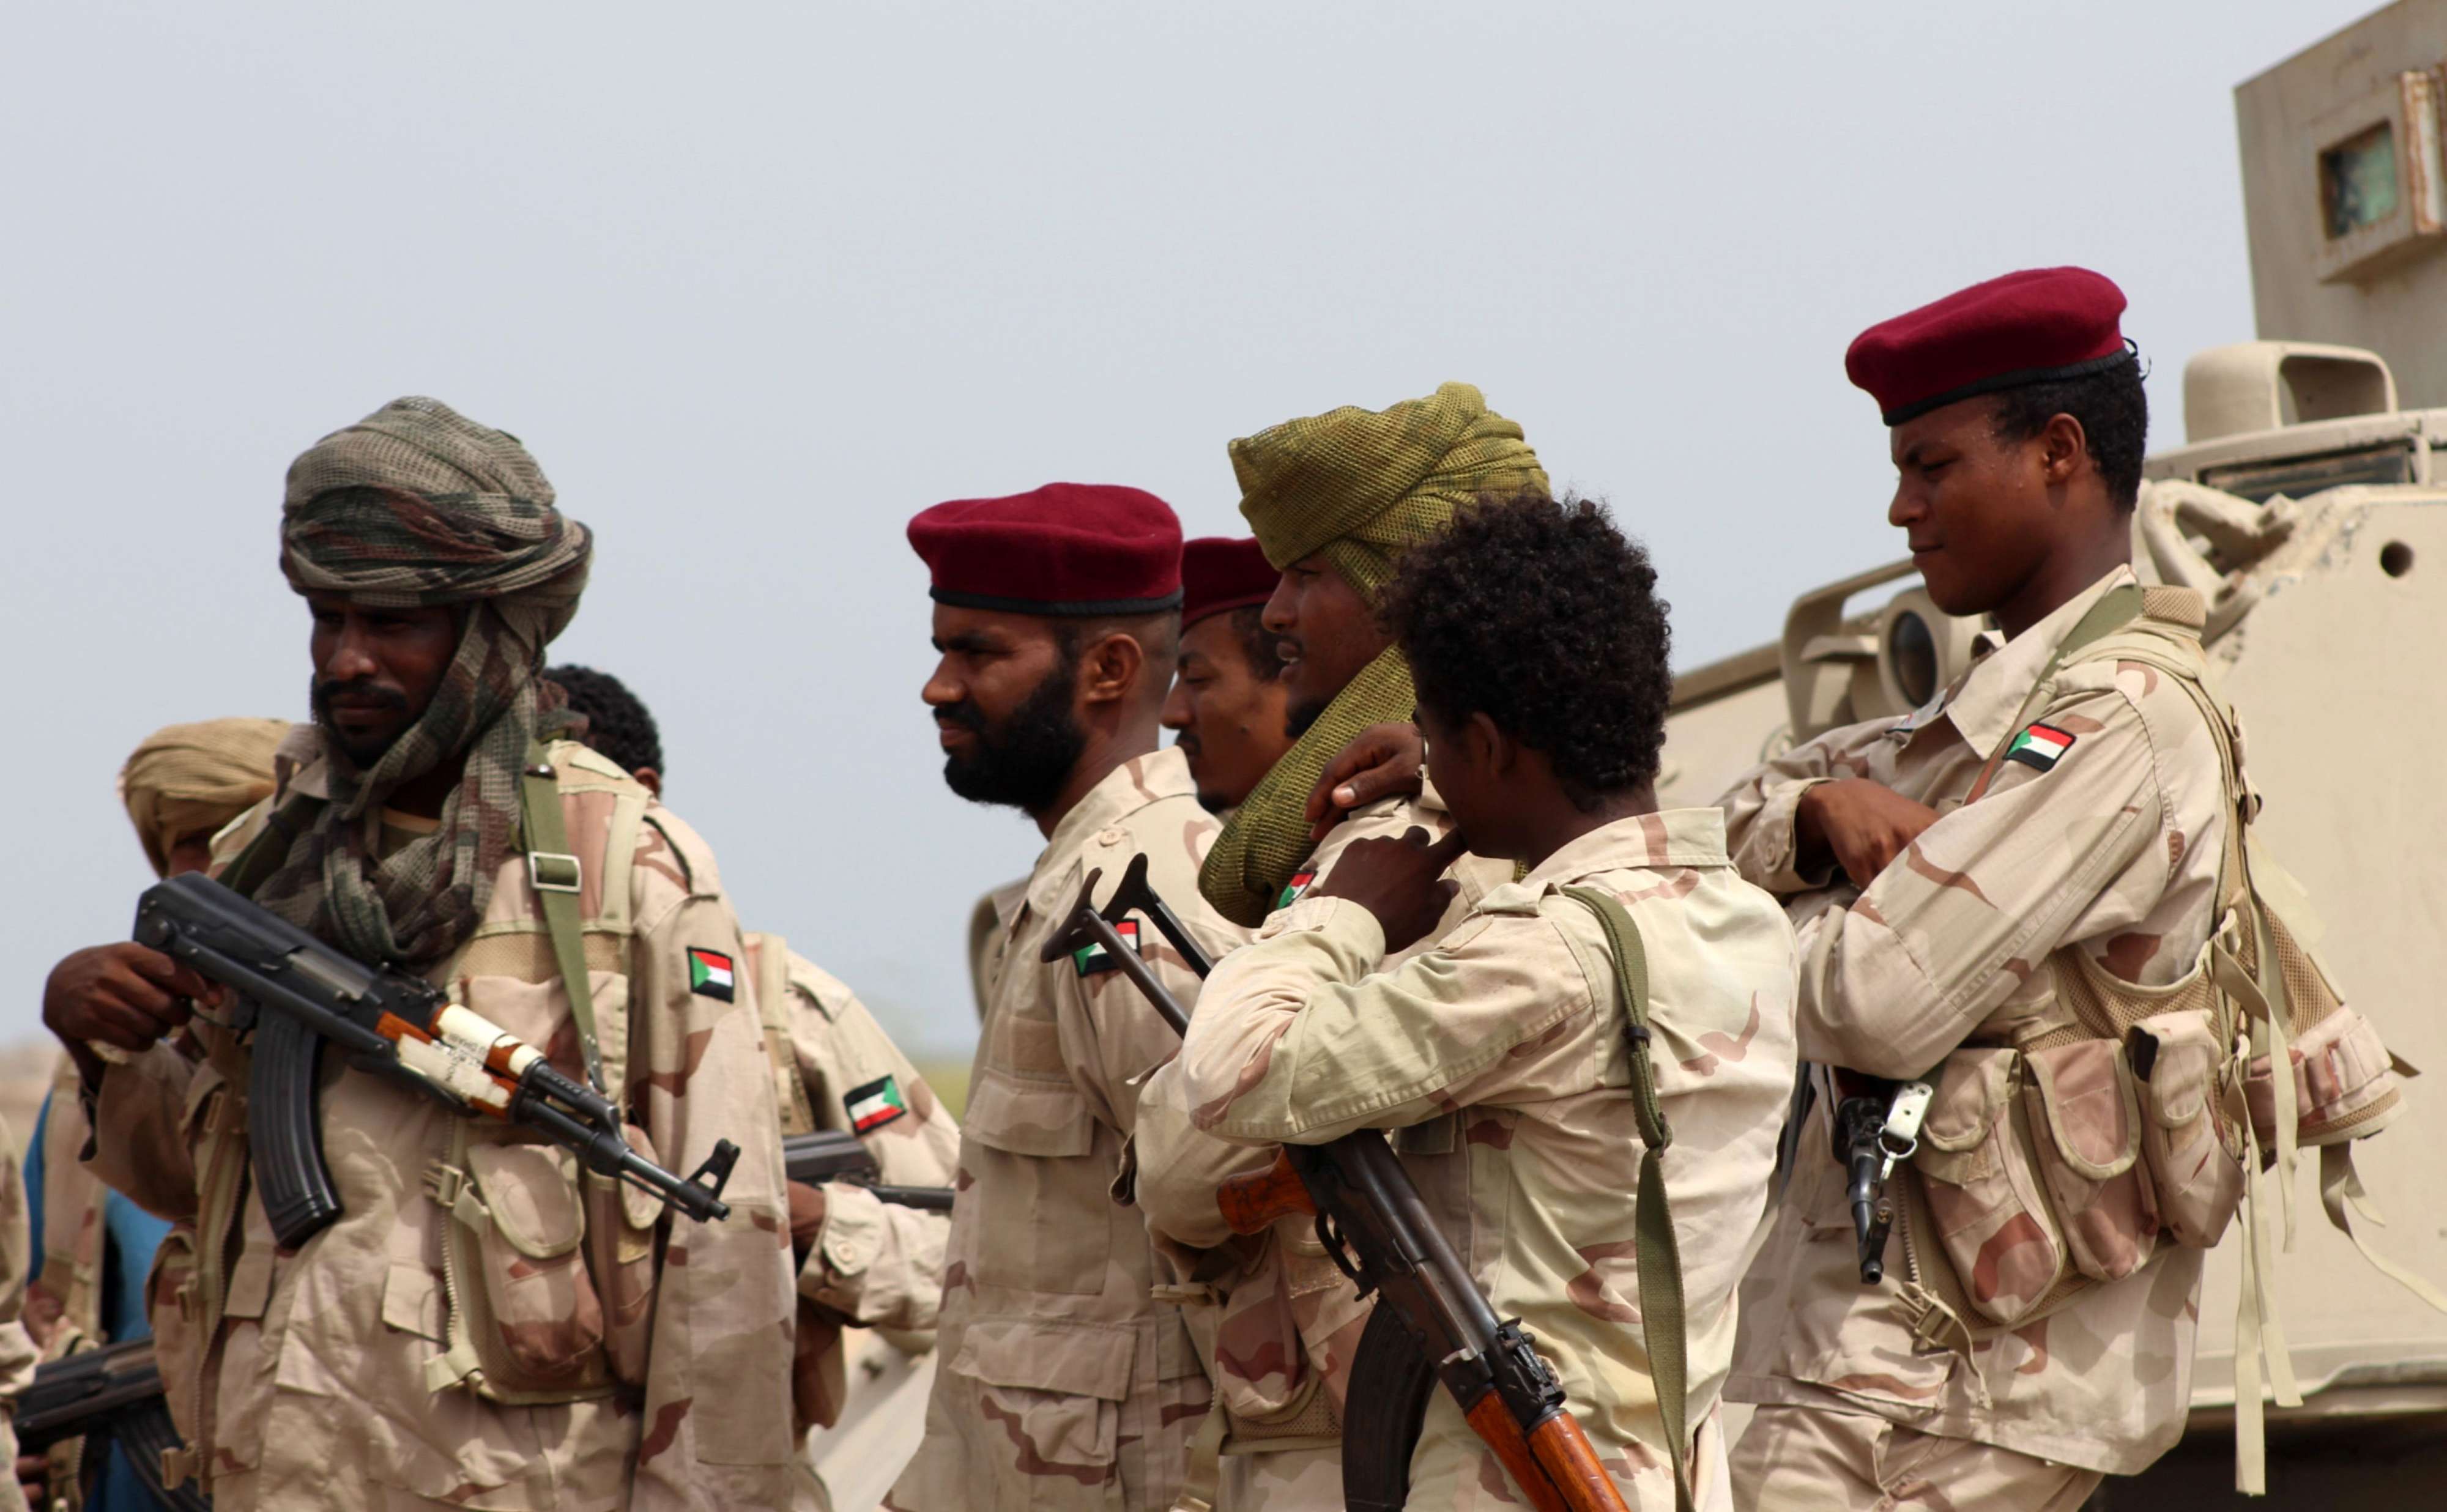 السودان عضو رئيسي في التحالف العربي